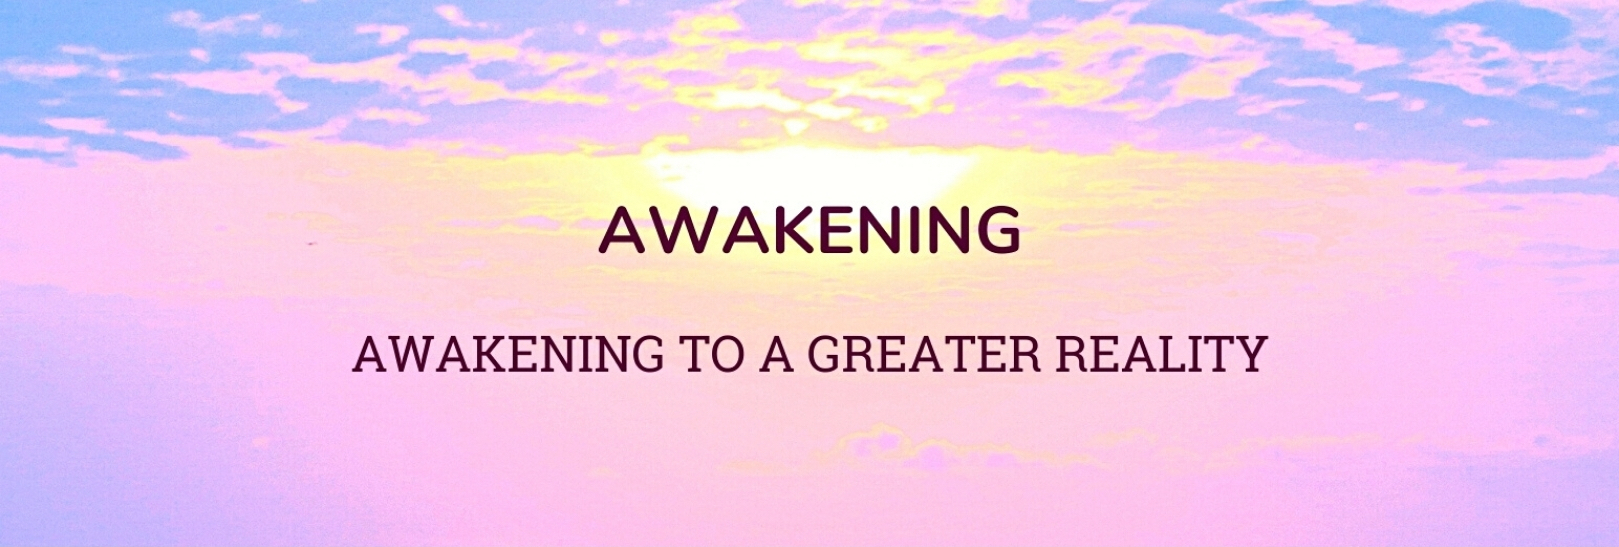 Awakening: Awakening to a Greater Reality